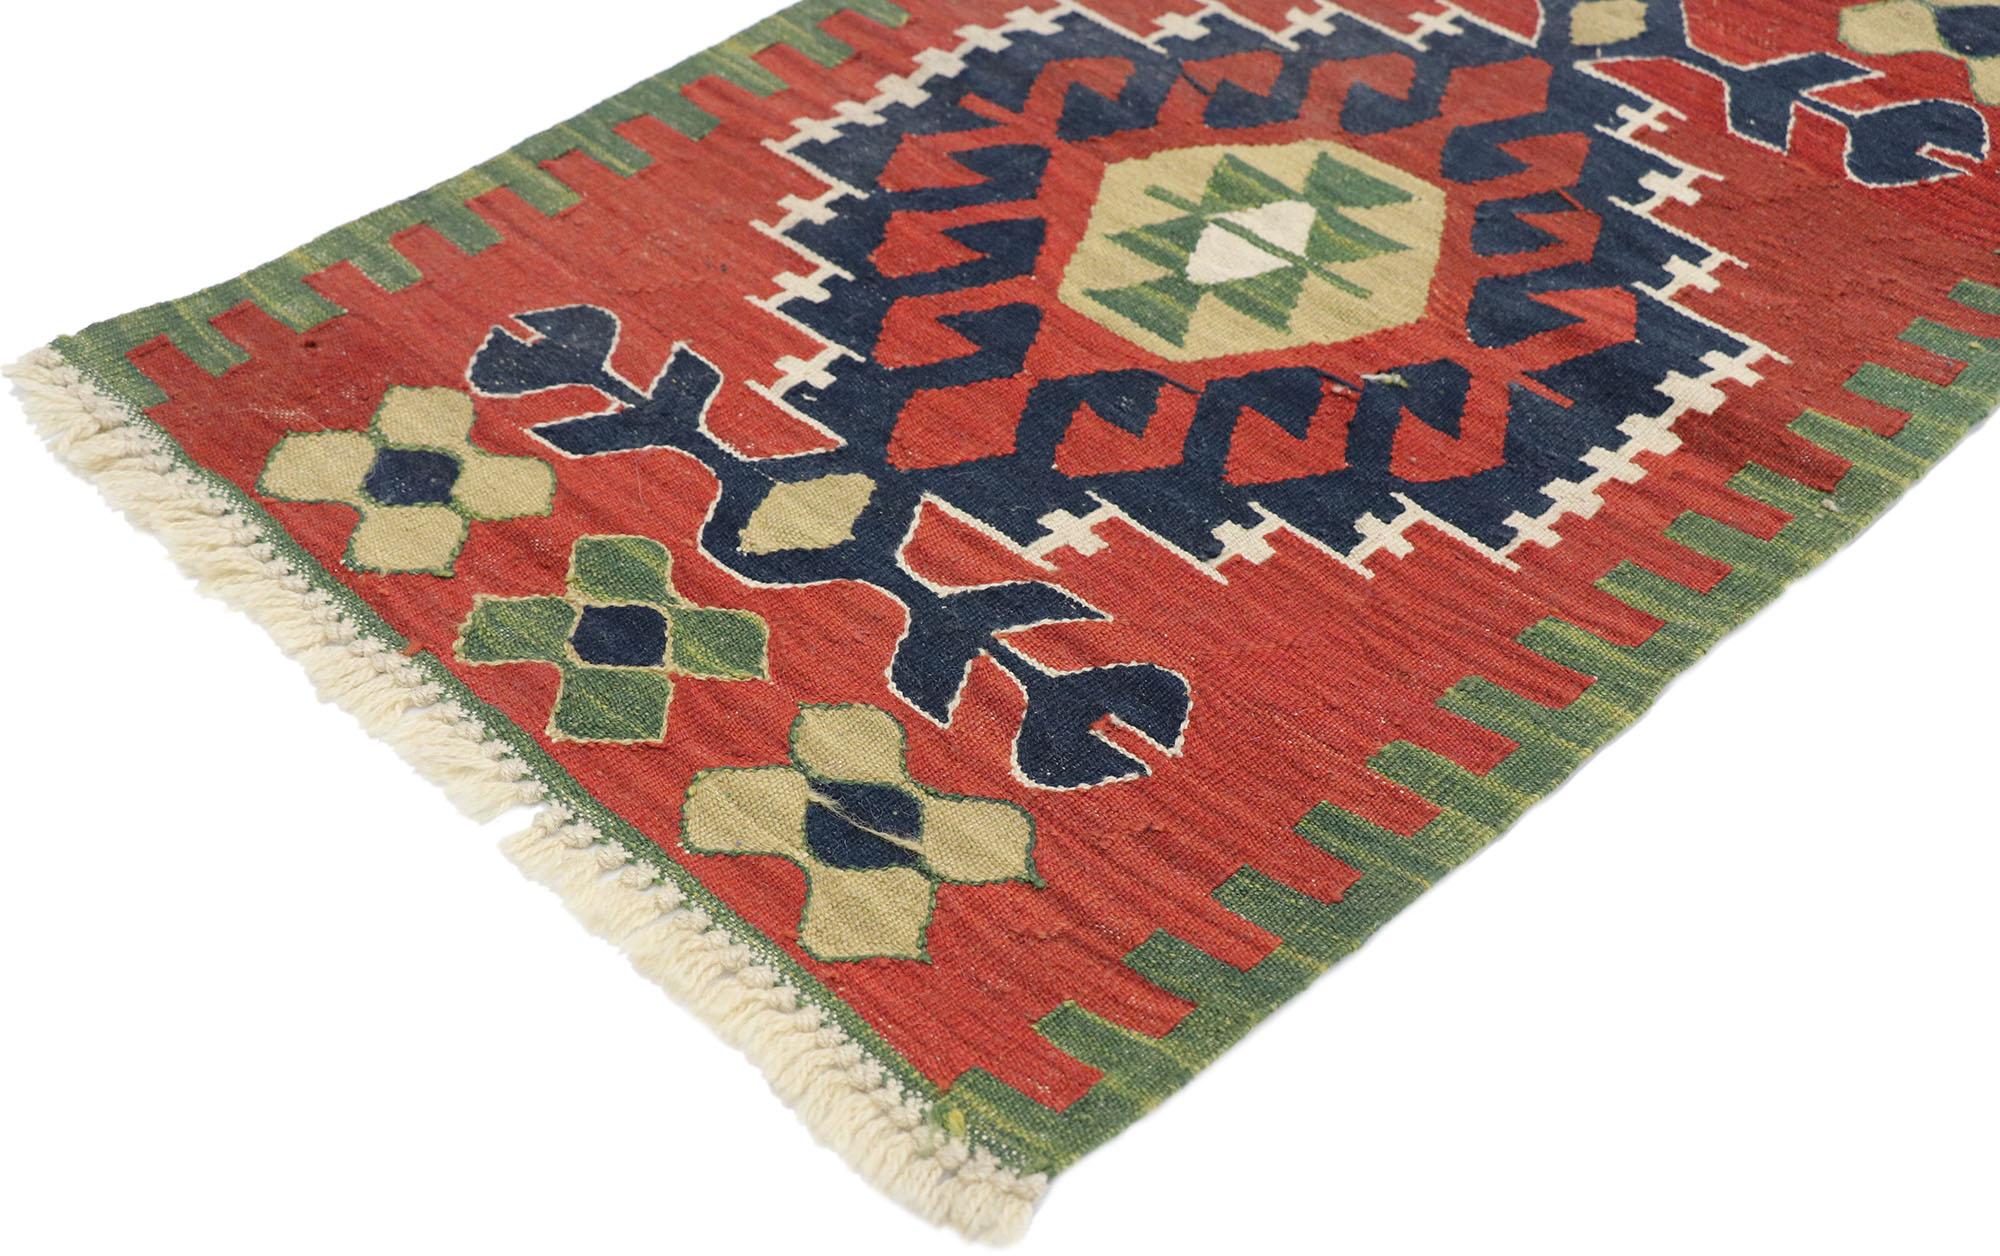 77874, Vintage Persian Shiraz Kilim rug with Tribal Style 01'11 x 02'10. Plein de petits détails et un design expressif audacieux combiné avec des couleurs vibrantes et un style tribal, ce tapis kilim persan vintage en laine tissé à la main est une